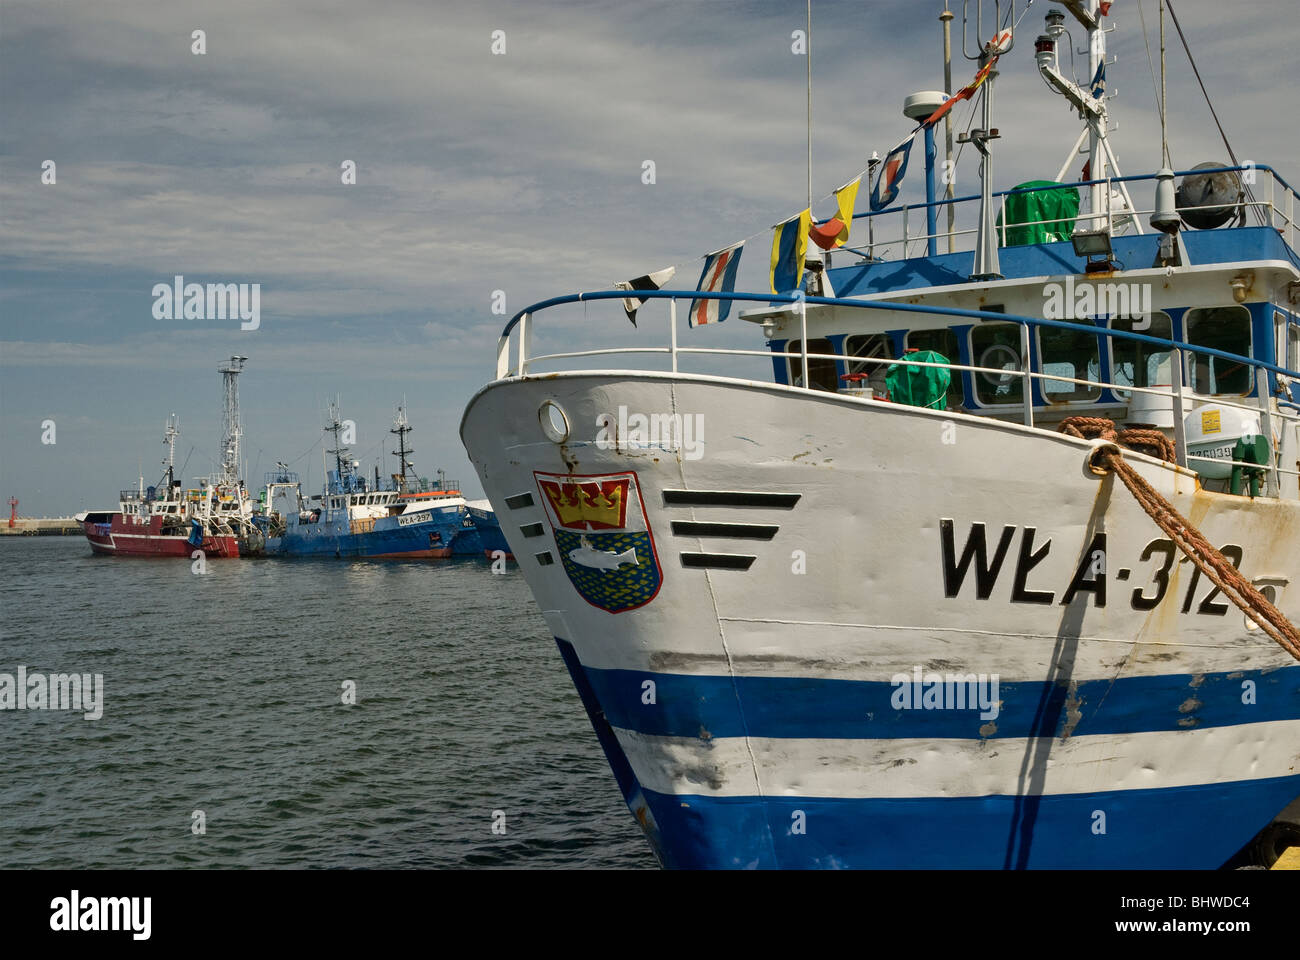 Fishing boats at port of Władysławowo, Pomorskie, Poland Stock Photo